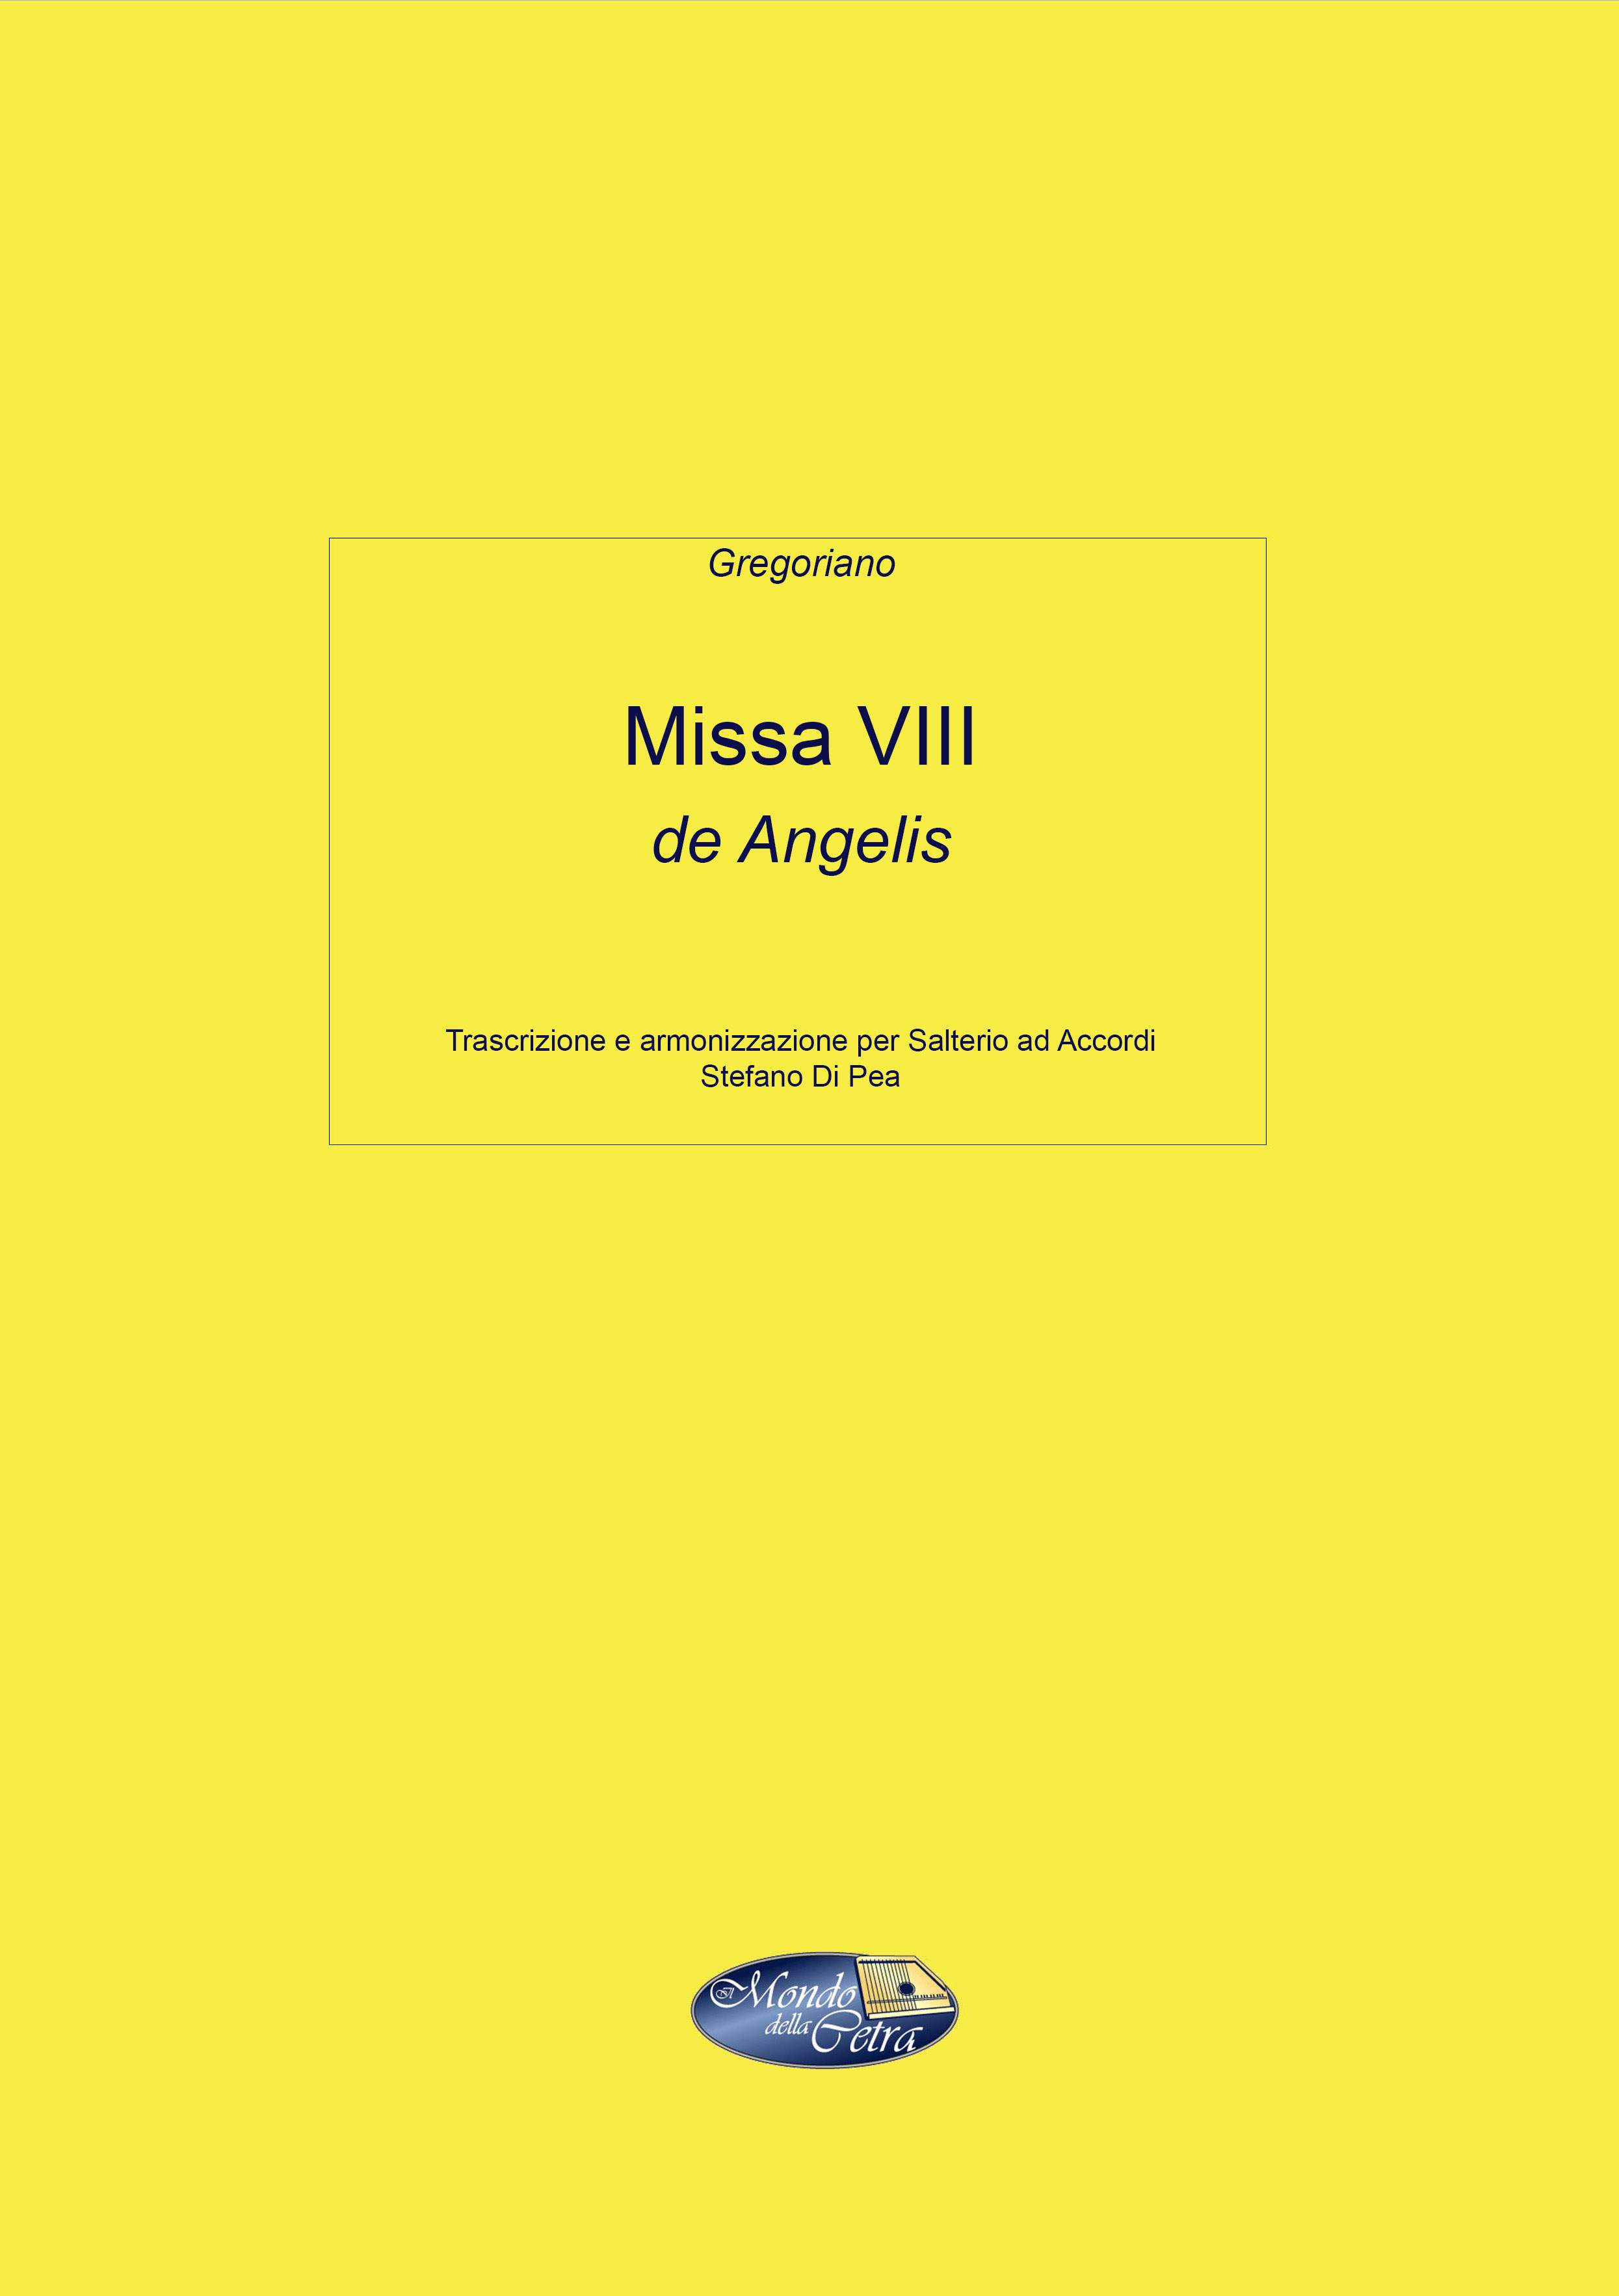 Missa VIII de Angelis